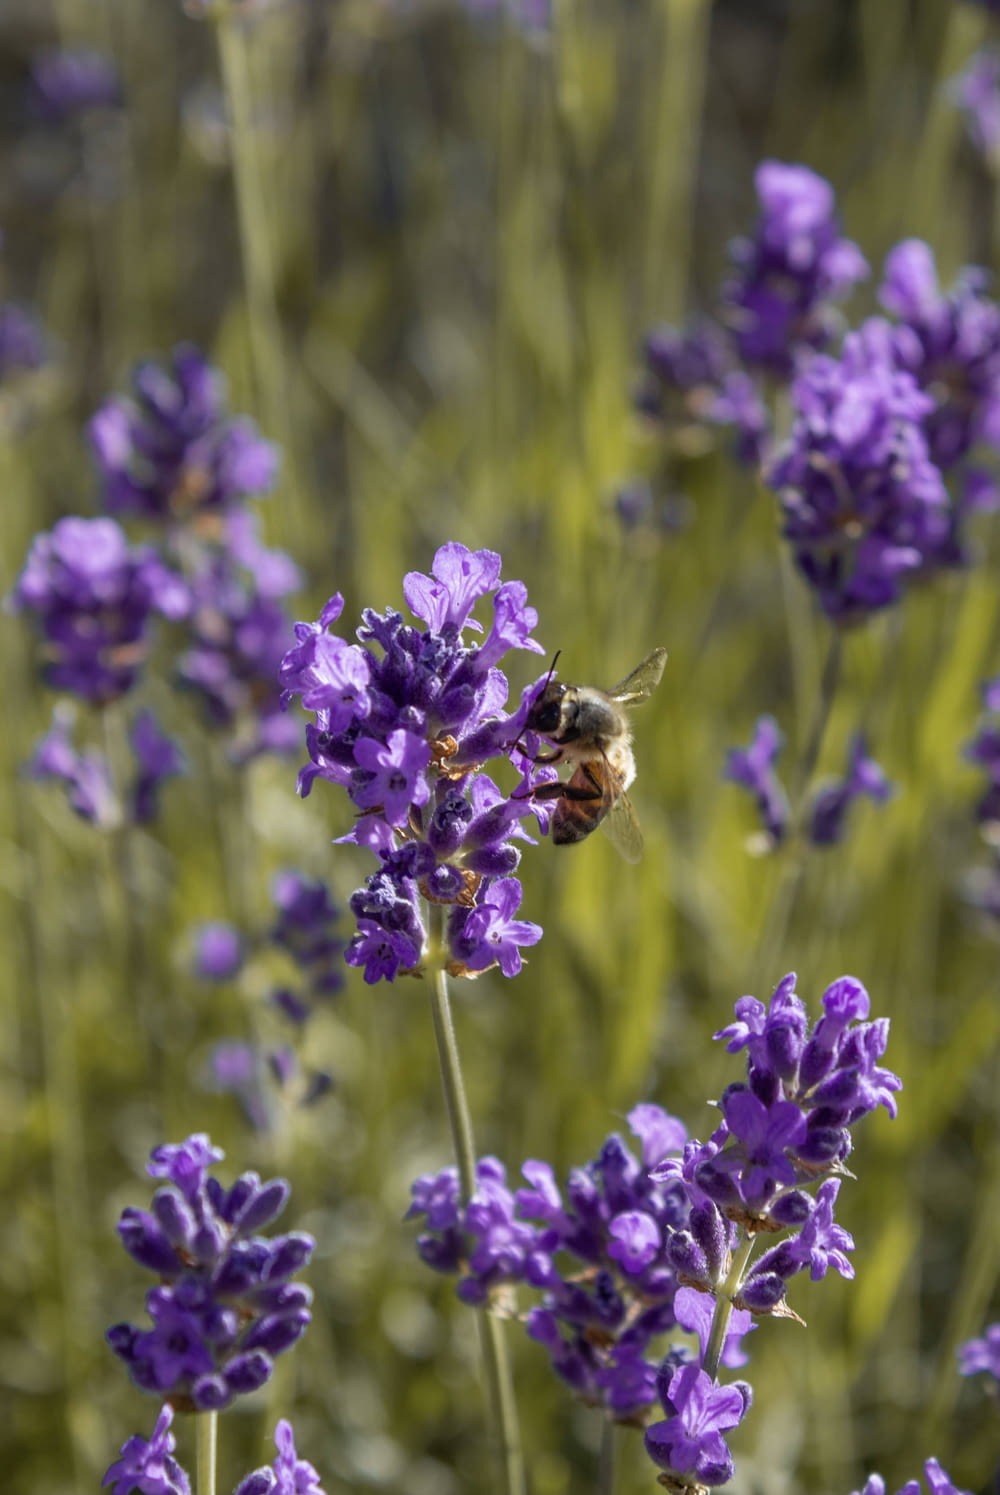 a bee sitting on a purple flower in a field